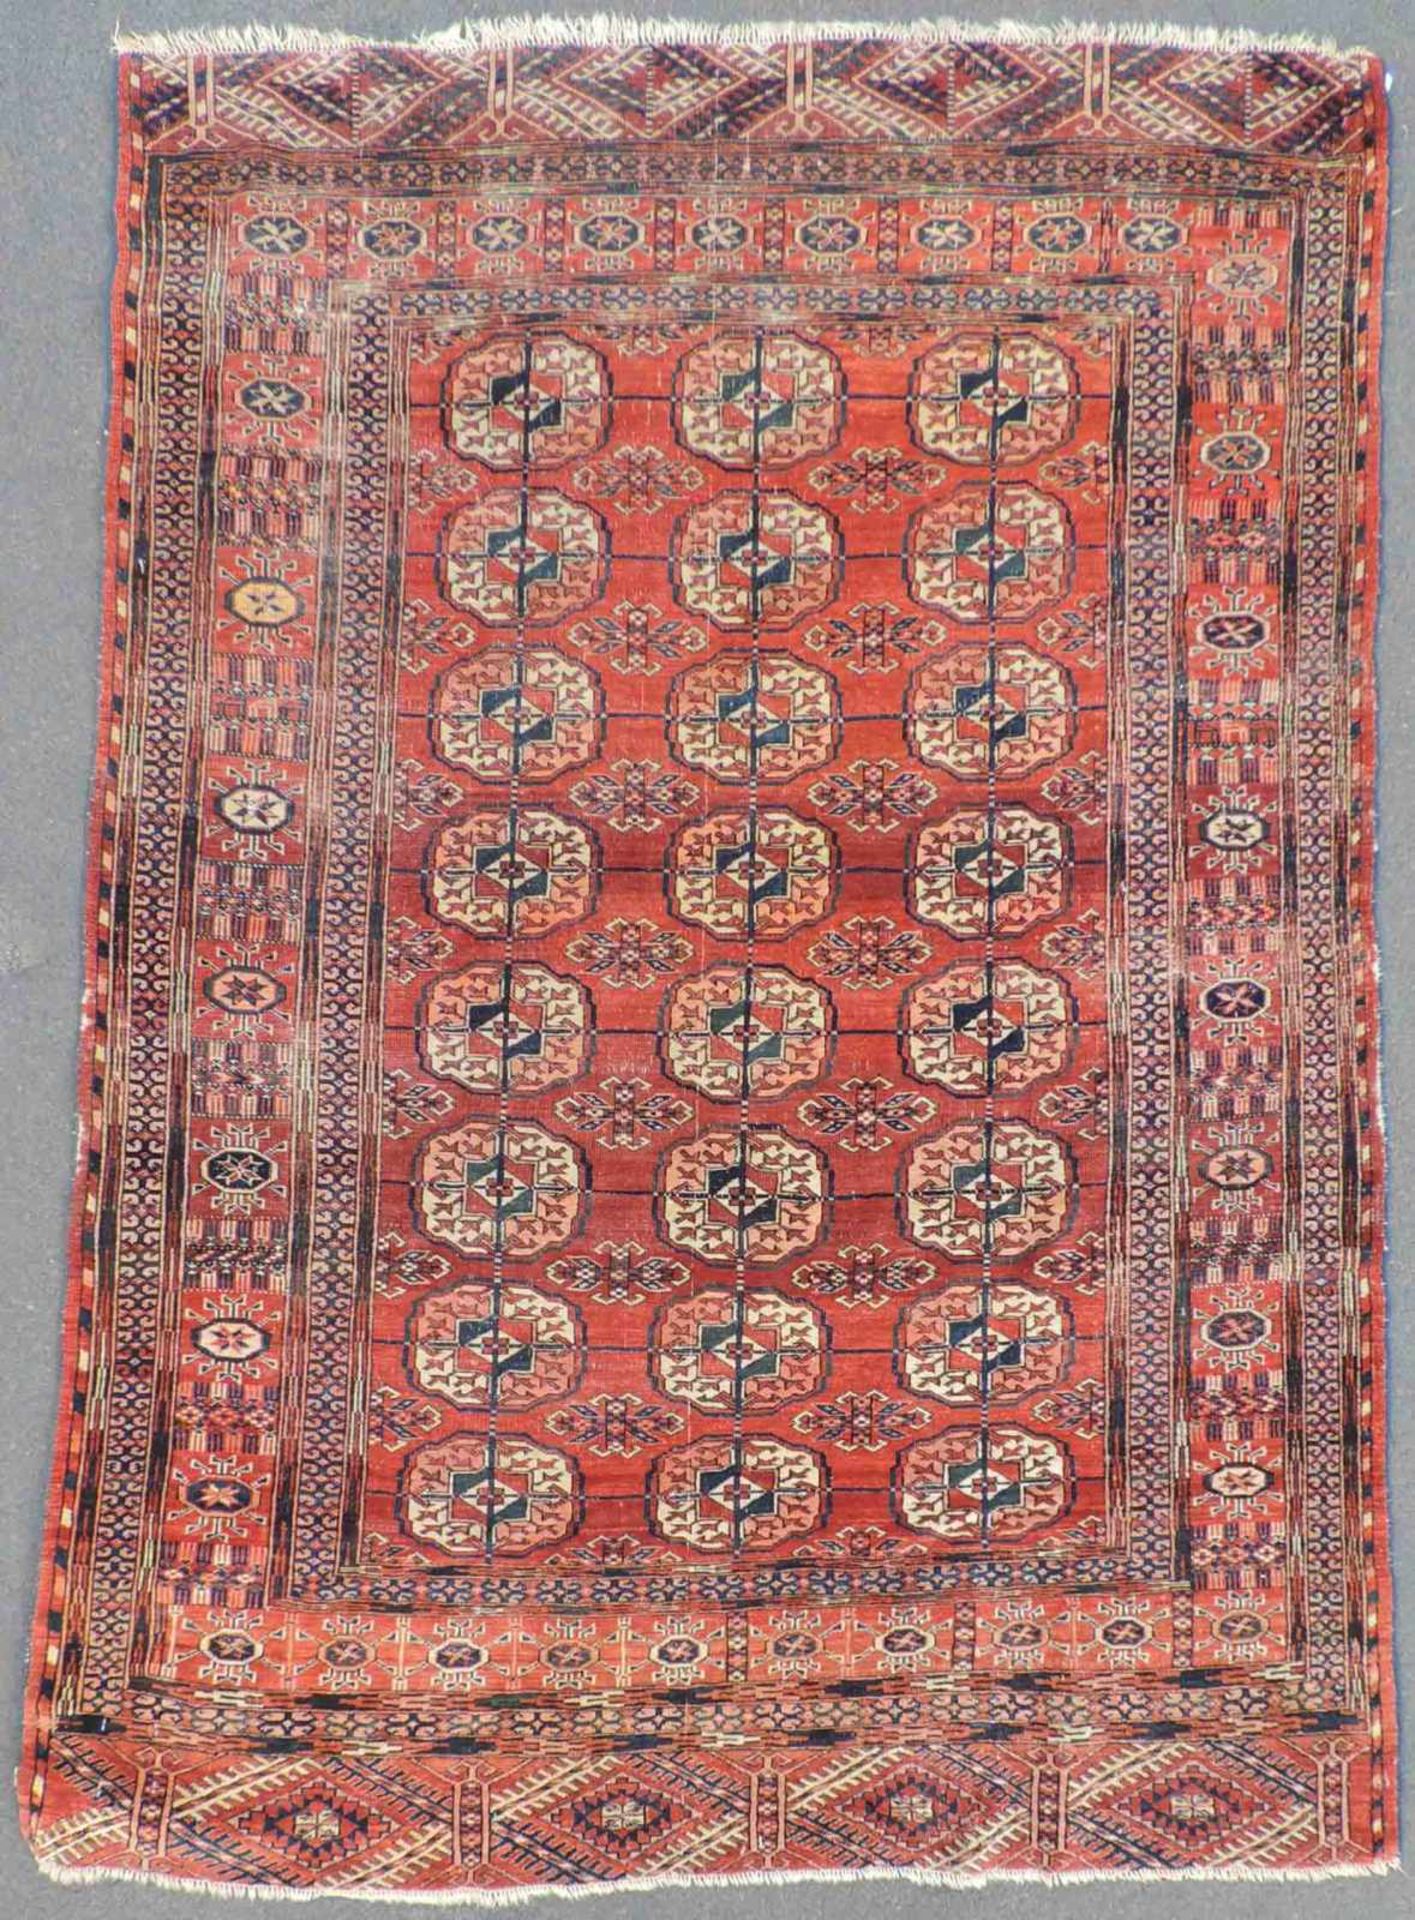 Tekke Stammesteppich. Turkmenistan, antik, um 1900. 173 cm x 130 cm. Handgeknüpft. Wolle auf